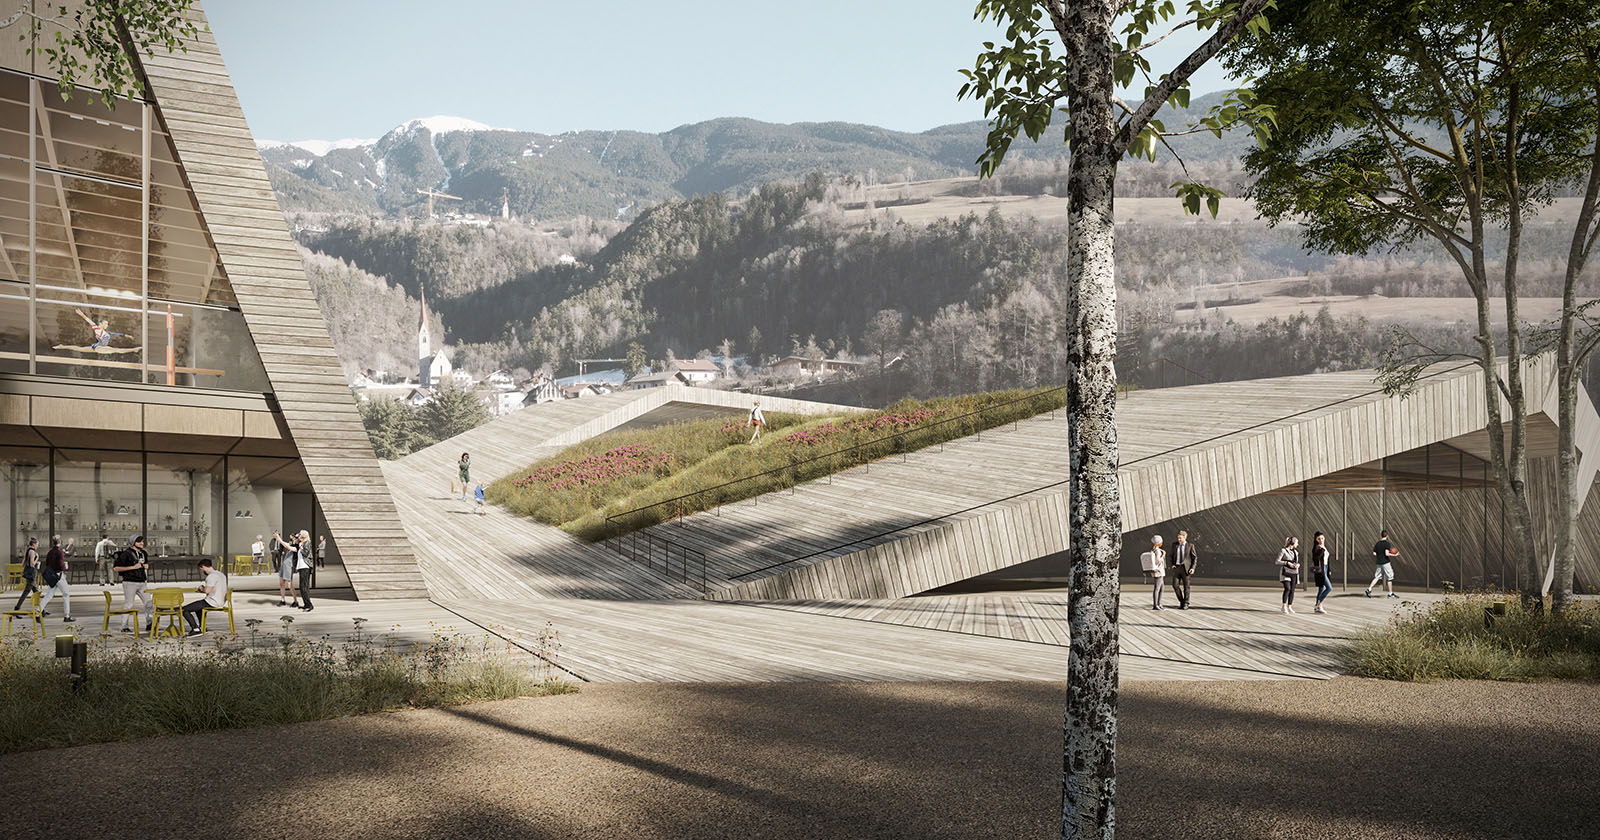 L'architettura-paesaggio di MoDus Architects per il parco sportivo a Bressanone (Bz)